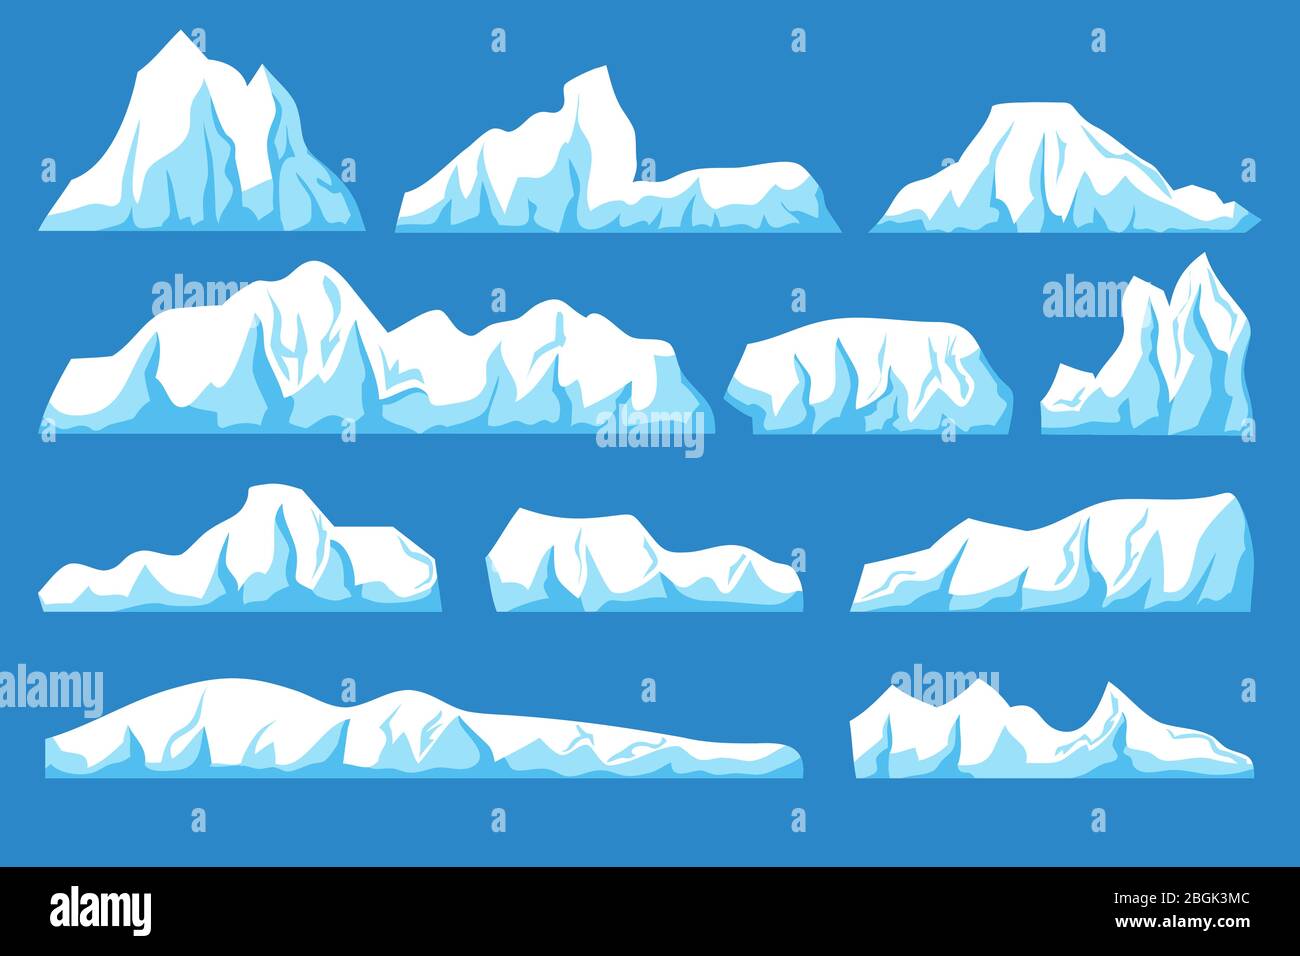 Zeichentrick schwimmenden Eisberg Vektor-Set. Meereis Felsen Landschaft für Klima- und Umweltschutz Konzept. Eisberg kalt, Natur Winter Gletscher Illustration Stock Vektor